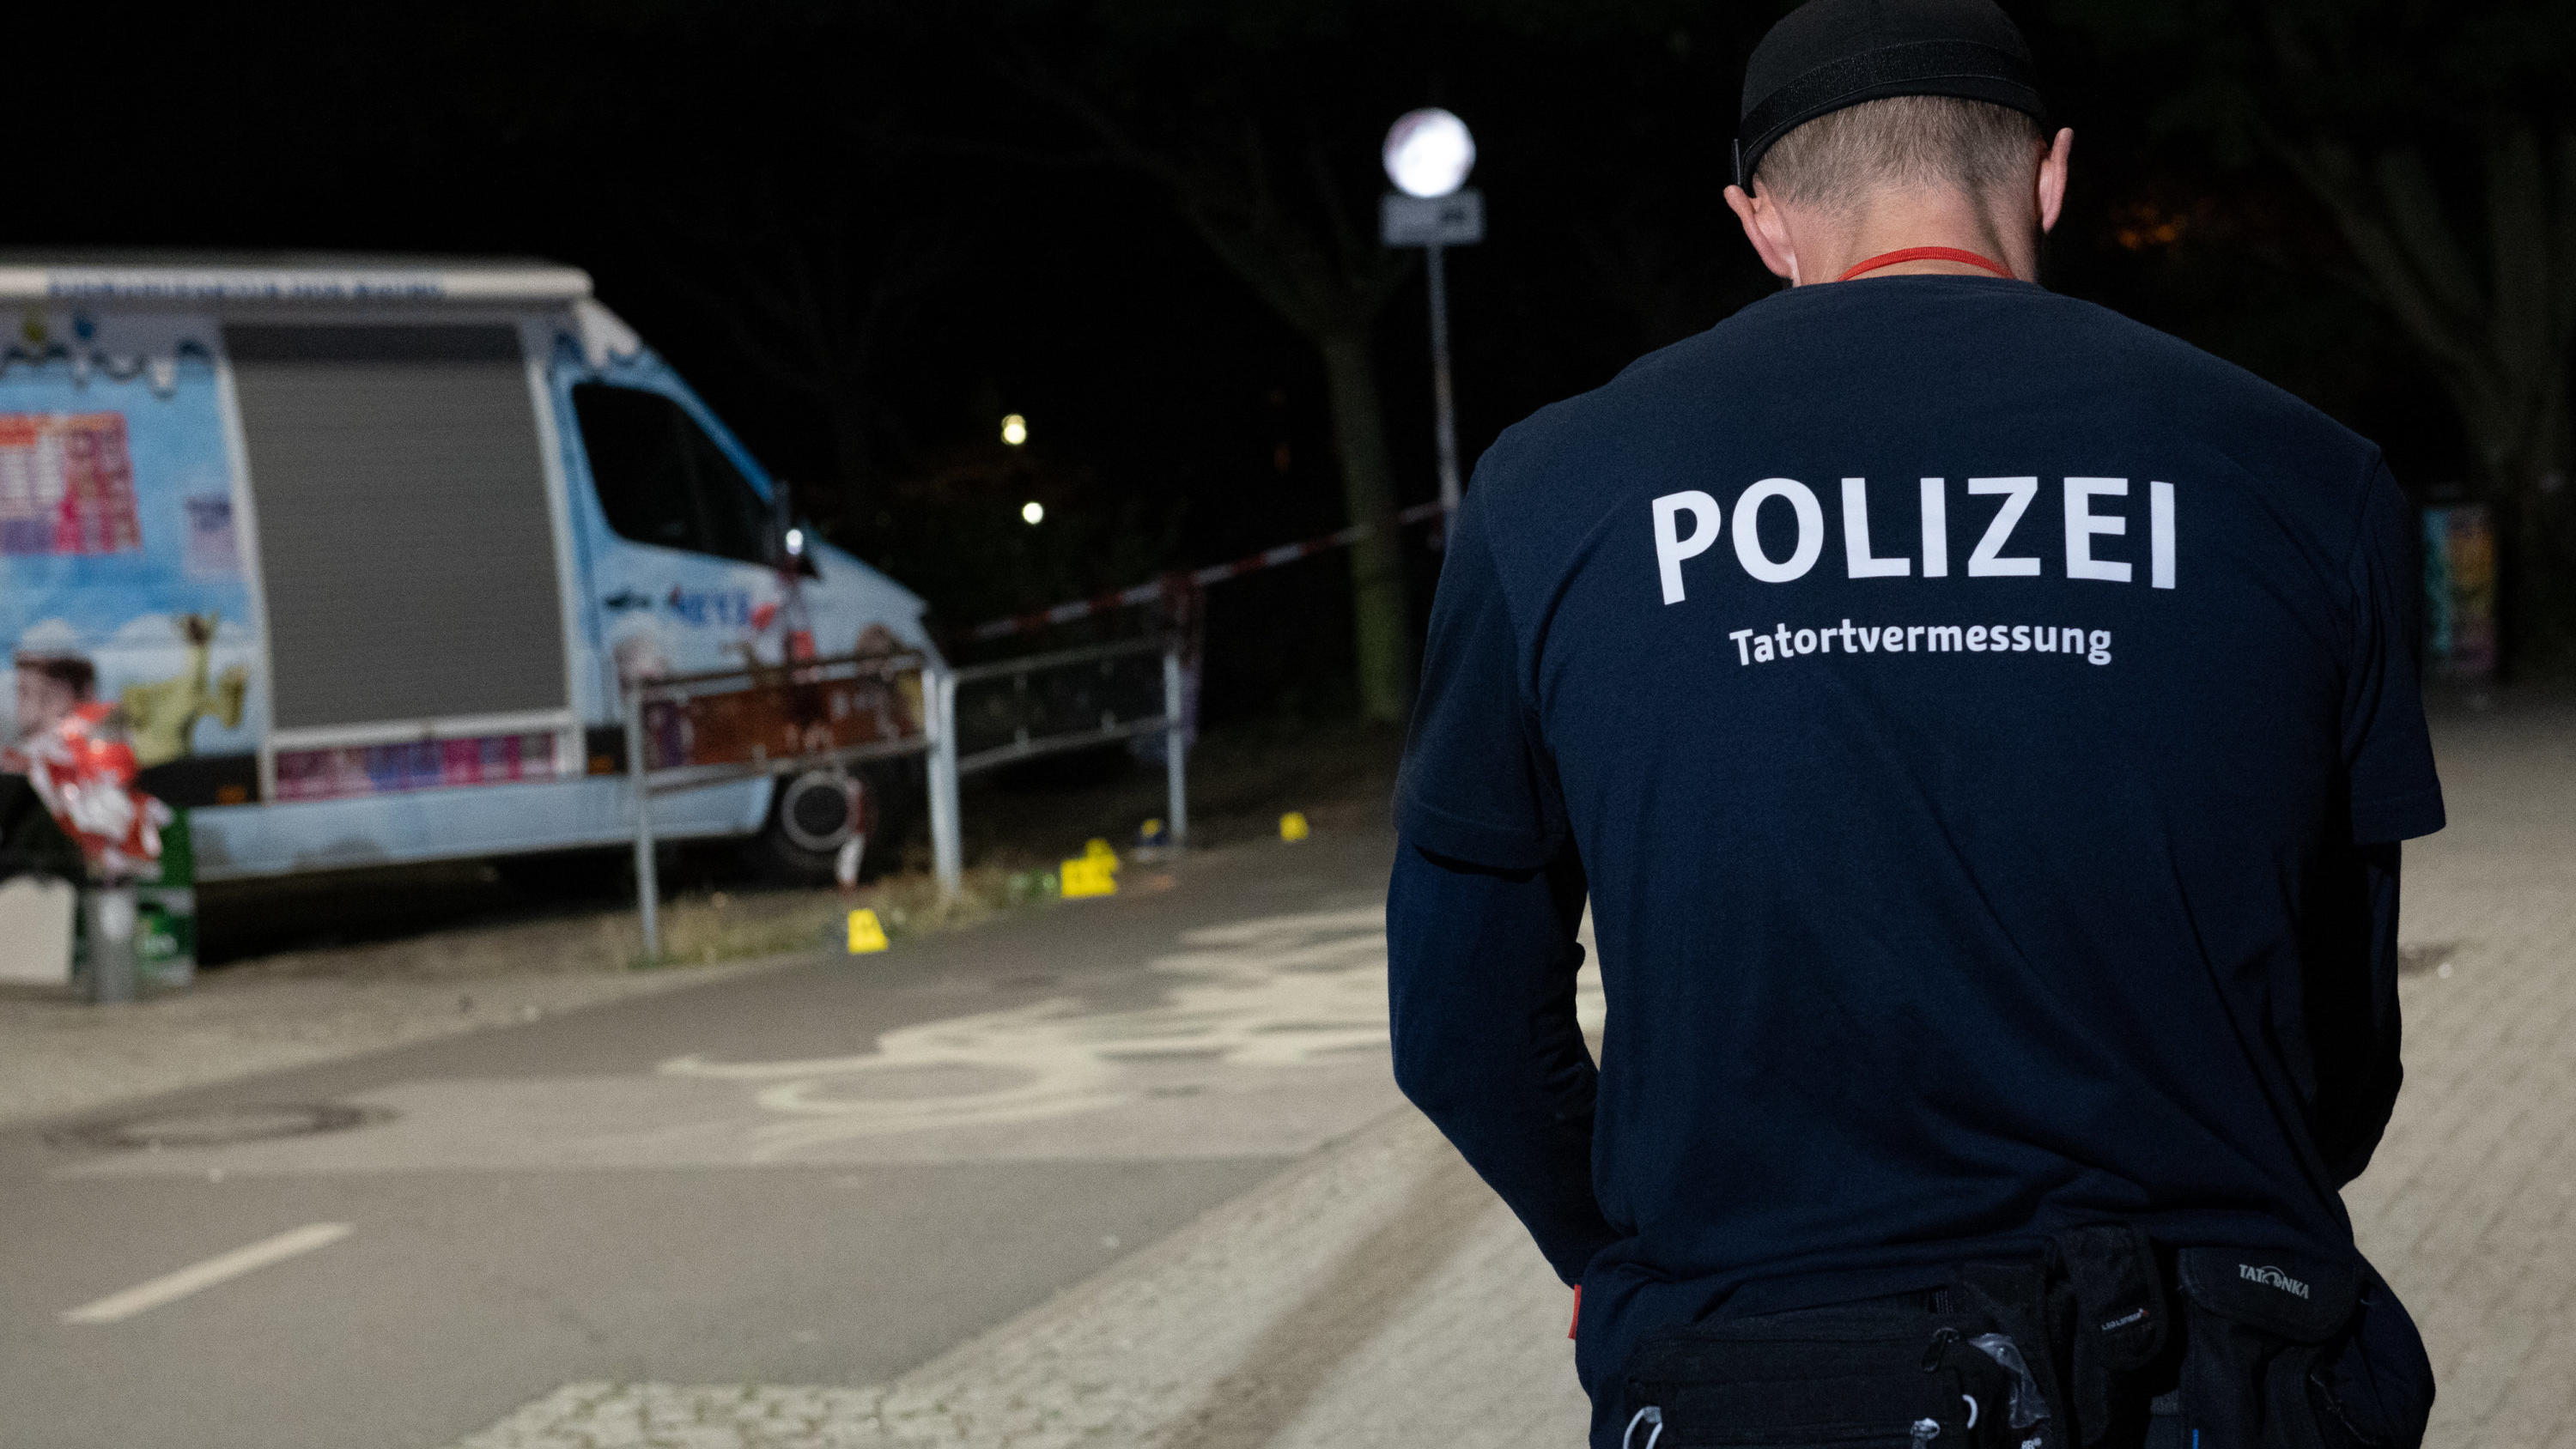 09.09.2018, Berlin: Ein Kriminaltechniker steht an einem Zugang zum Tempelhofer Feld in Berlin-Neukölln. Dort wurde ein Mann durch Schüsse lebensgefährlich verletzt. Der Verletzte wurde in ein Krankenhaus gebracht. Dort starb er an den Verletzungen. 